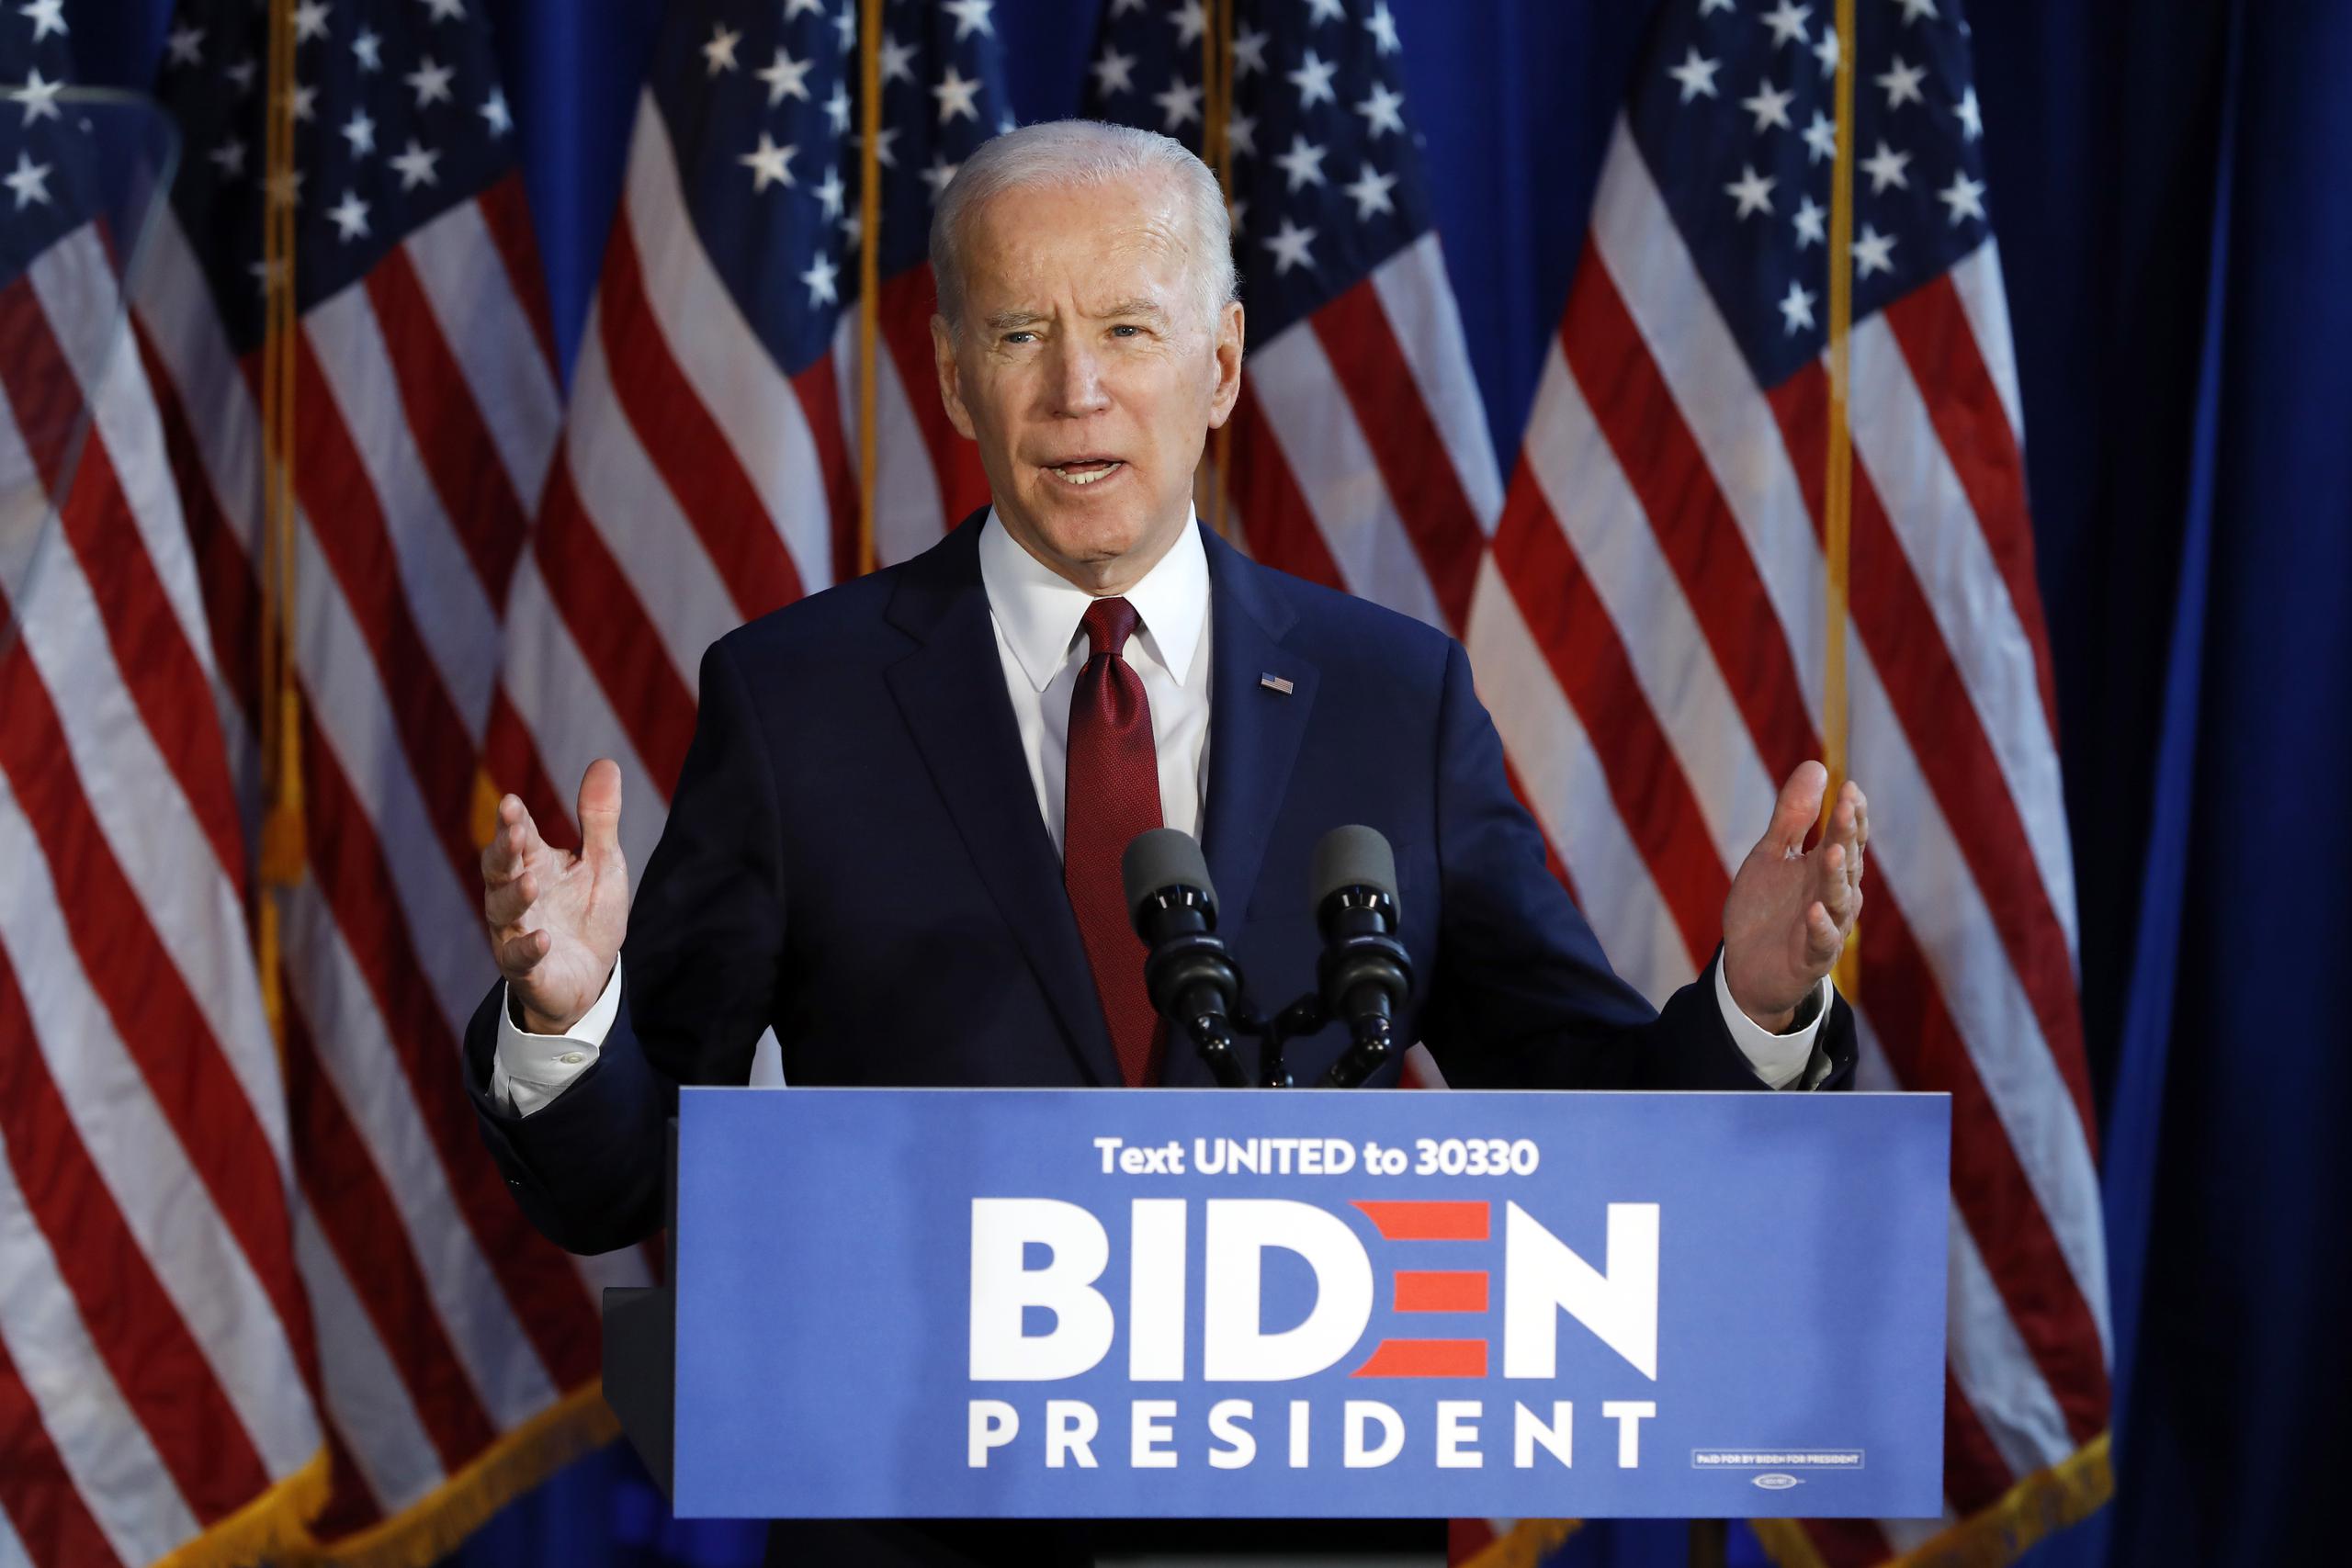 El precandidato demócrata a la presidencia Joe Biden gesticula durante un evento en Nueva York